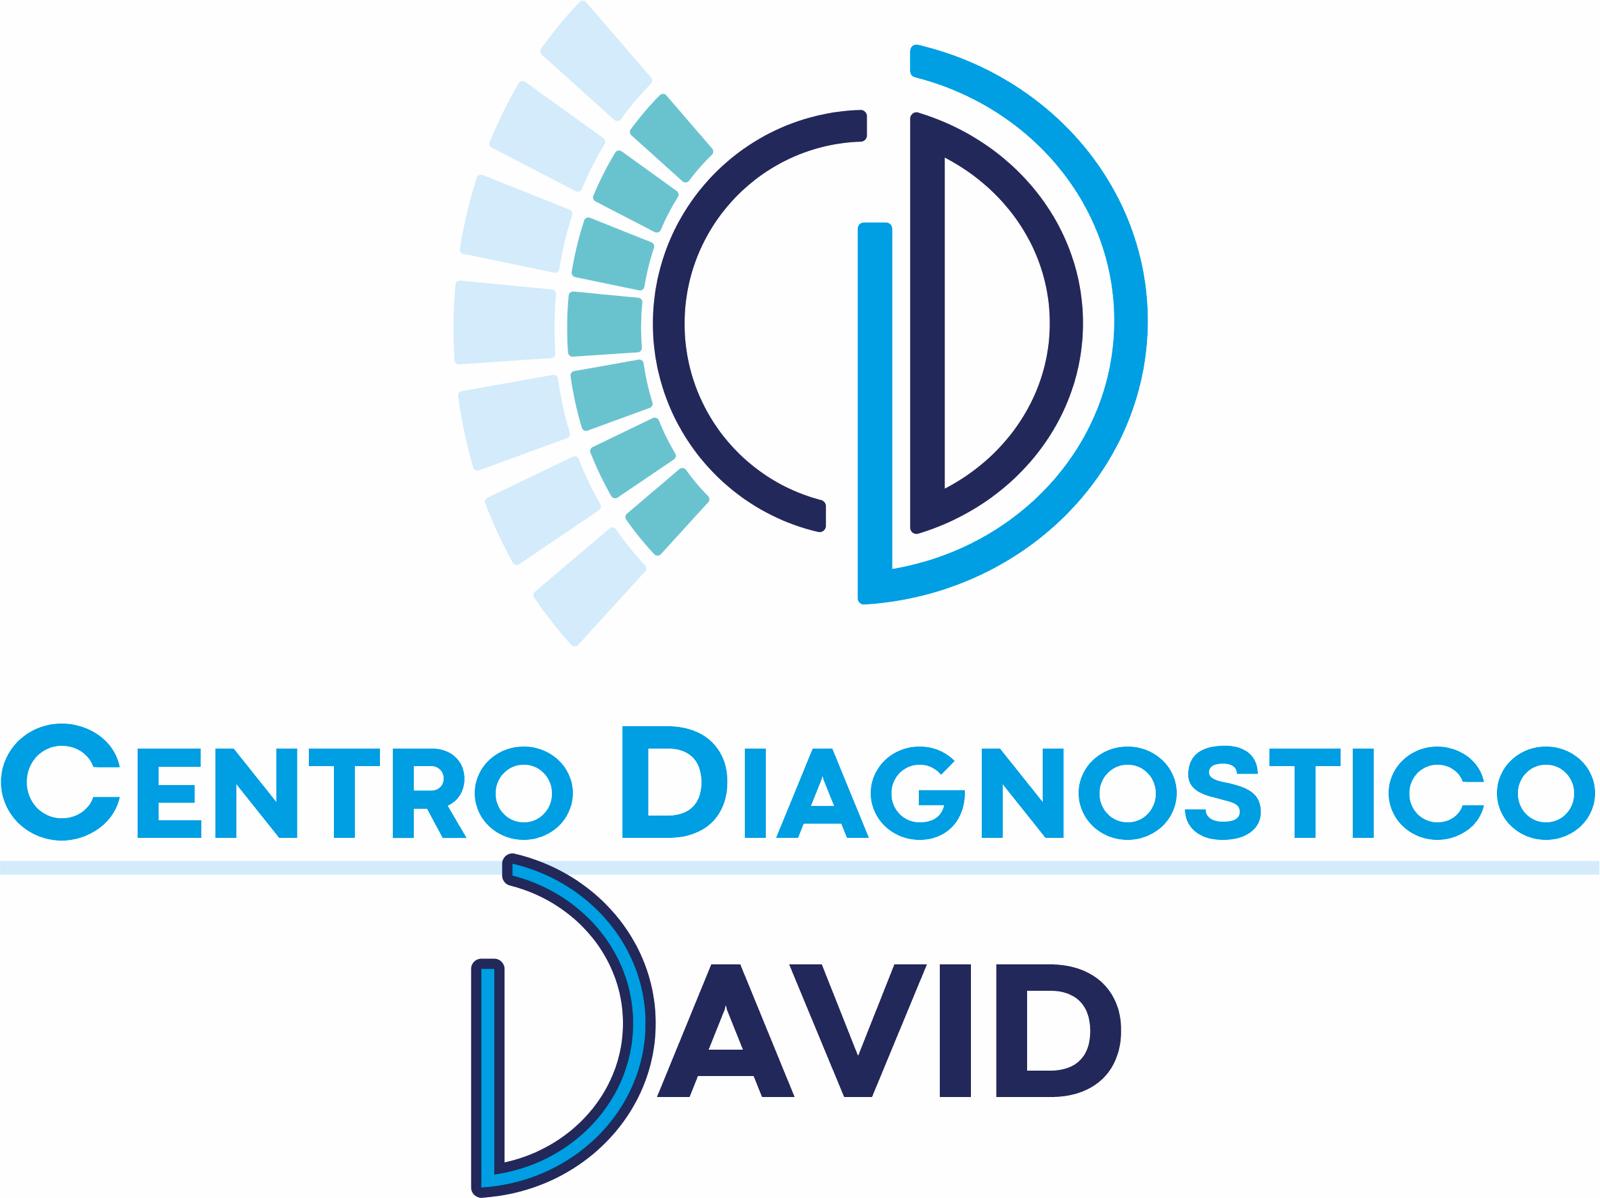 Centro Diagnostico David - LOGO